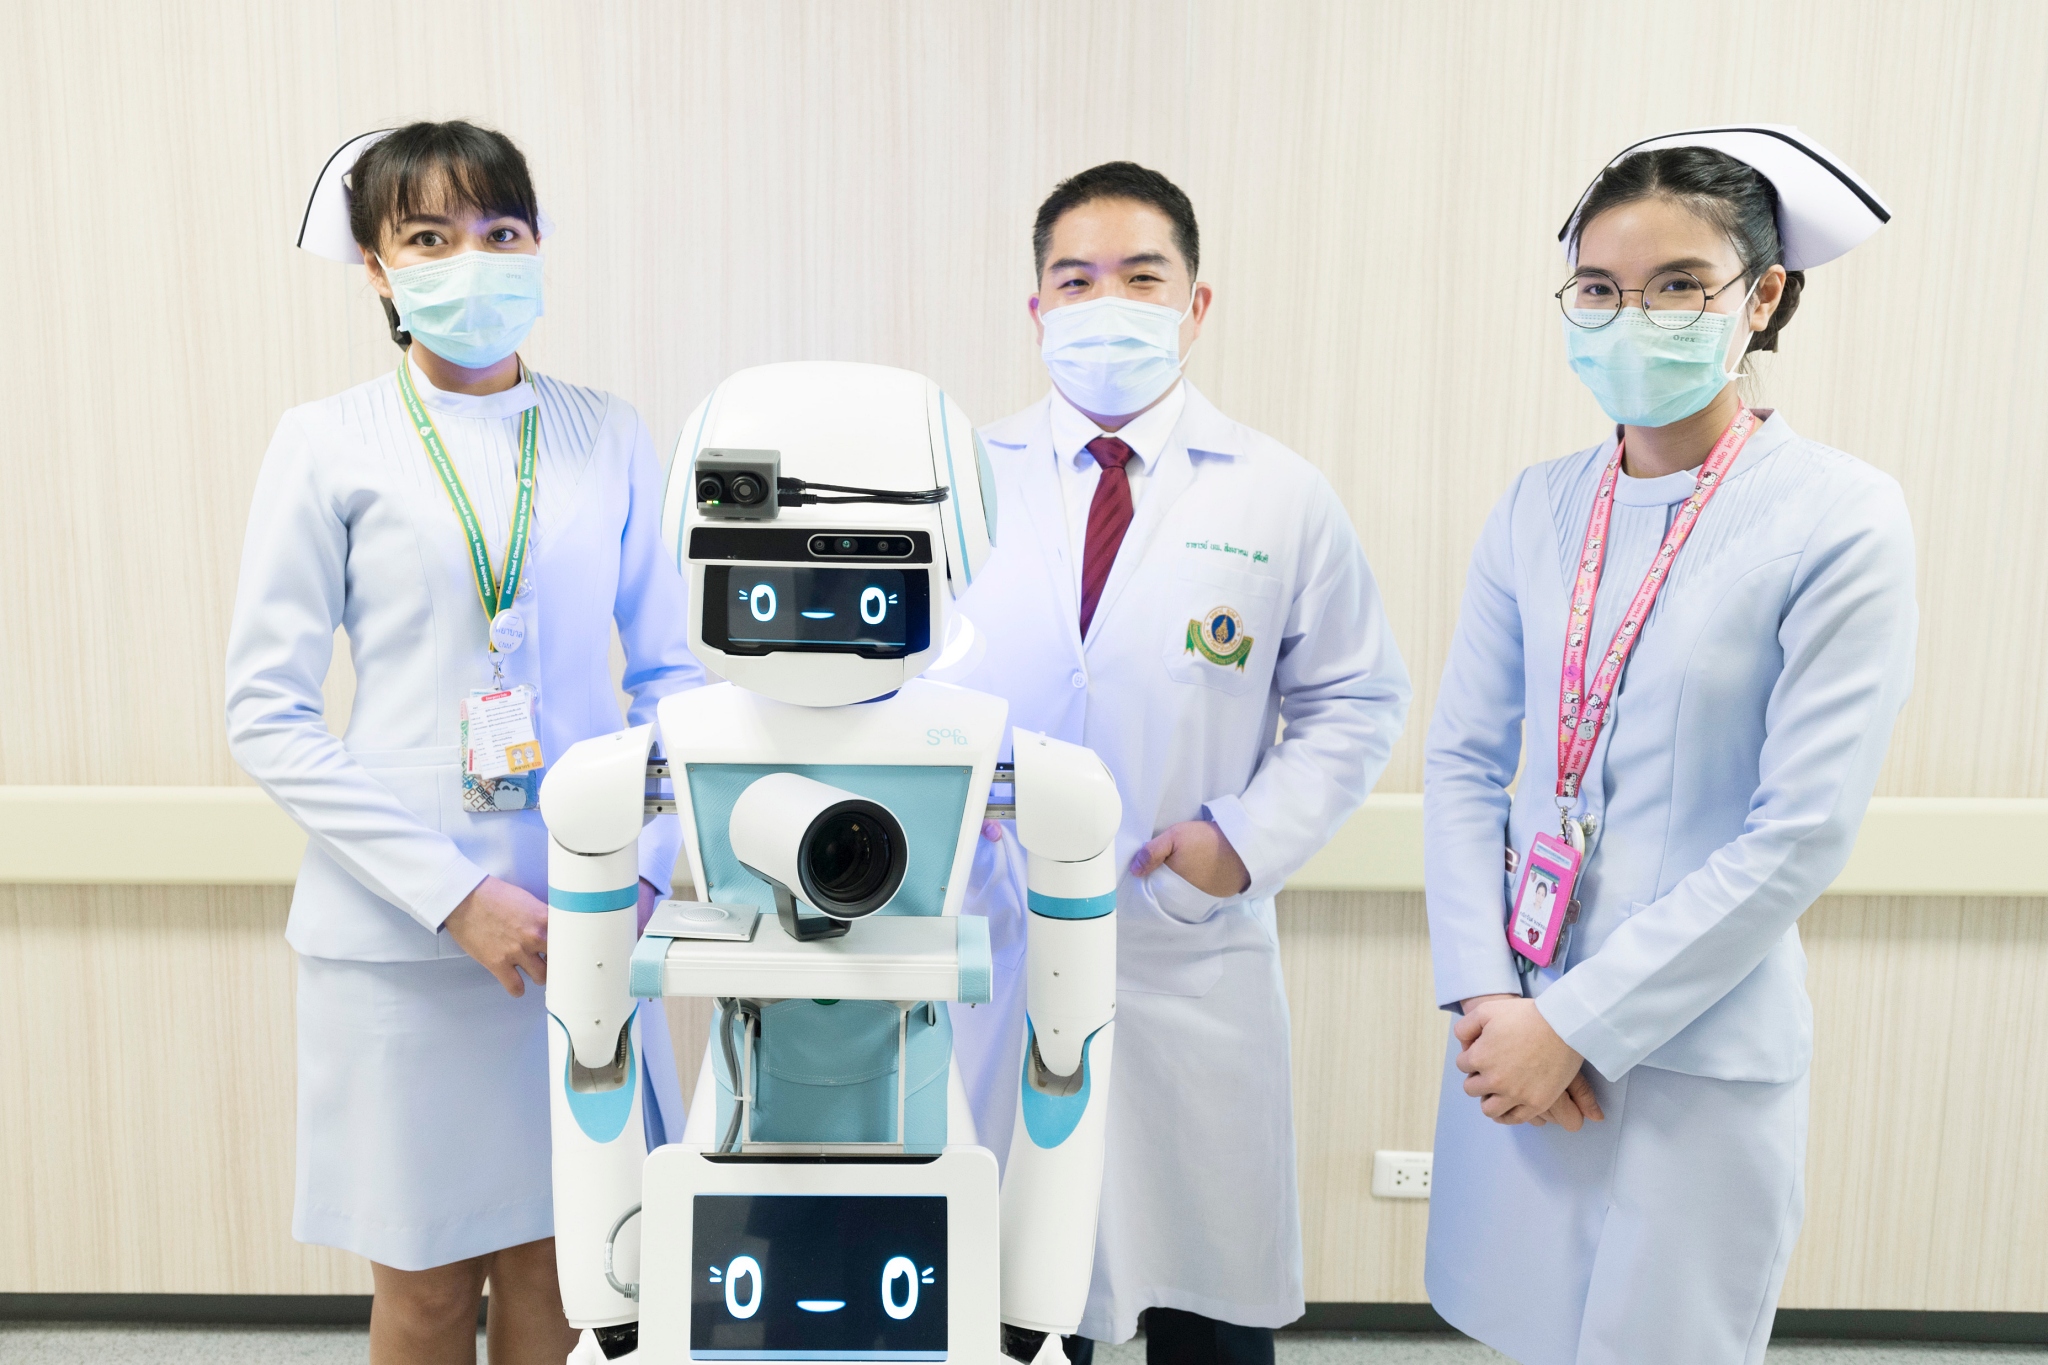 มจธ. ส่งมอบ หุ่นยนต์ “มดบริรักษ์” ชุดแรก ประจำการช่วยสนับสนุนบุคลากรทางการแพทย์ดูแลผู้ป่วย COVID-19